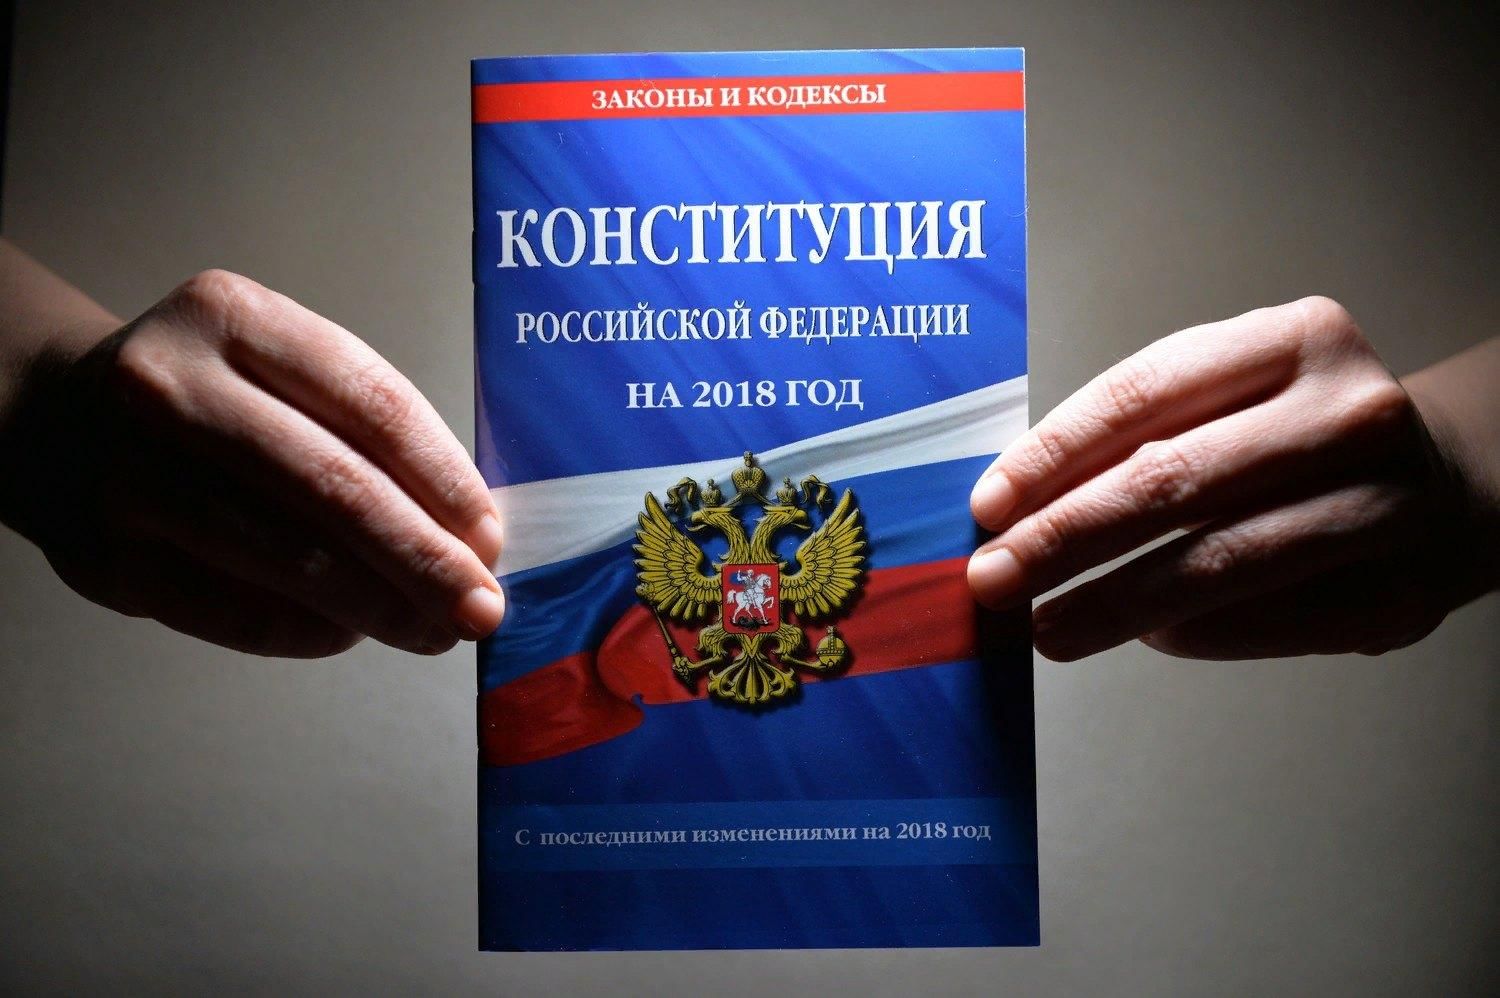 Конституция российской федера